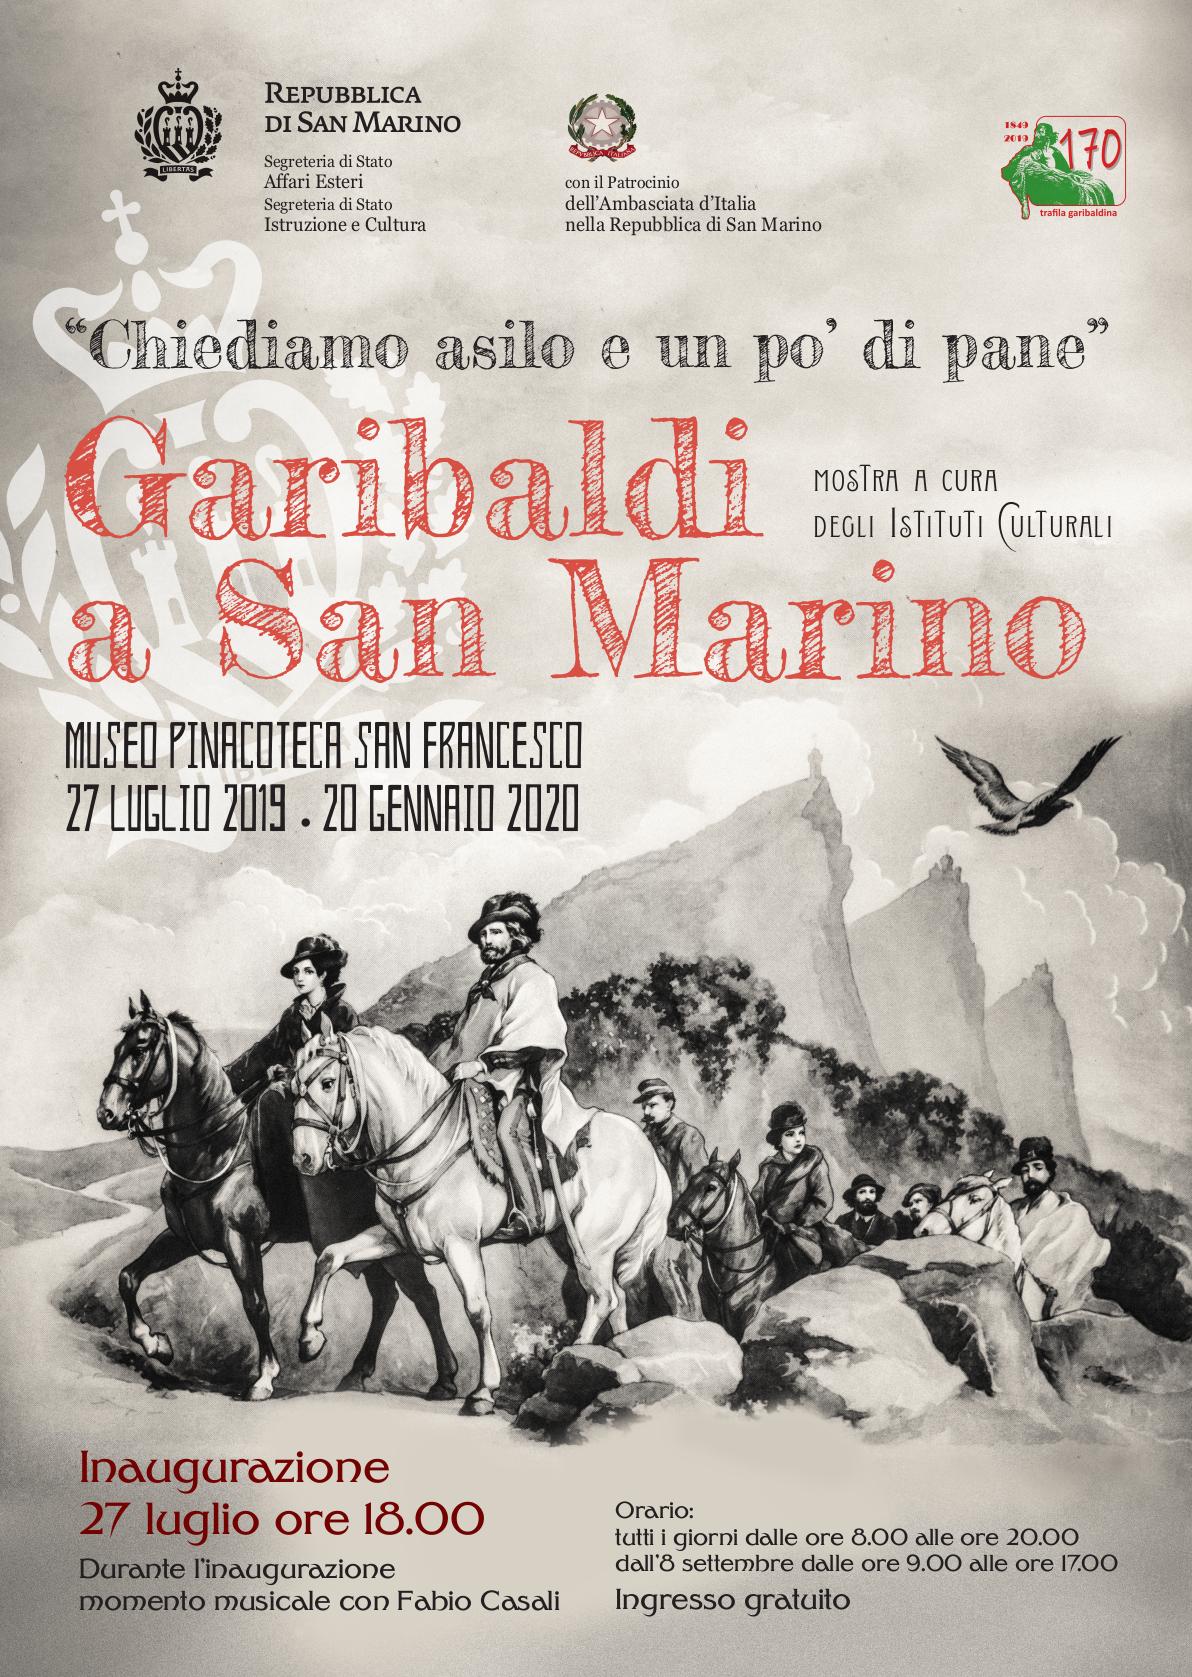 "Chiediamo asilo e un po' di pane", Garibaldi a San Marino